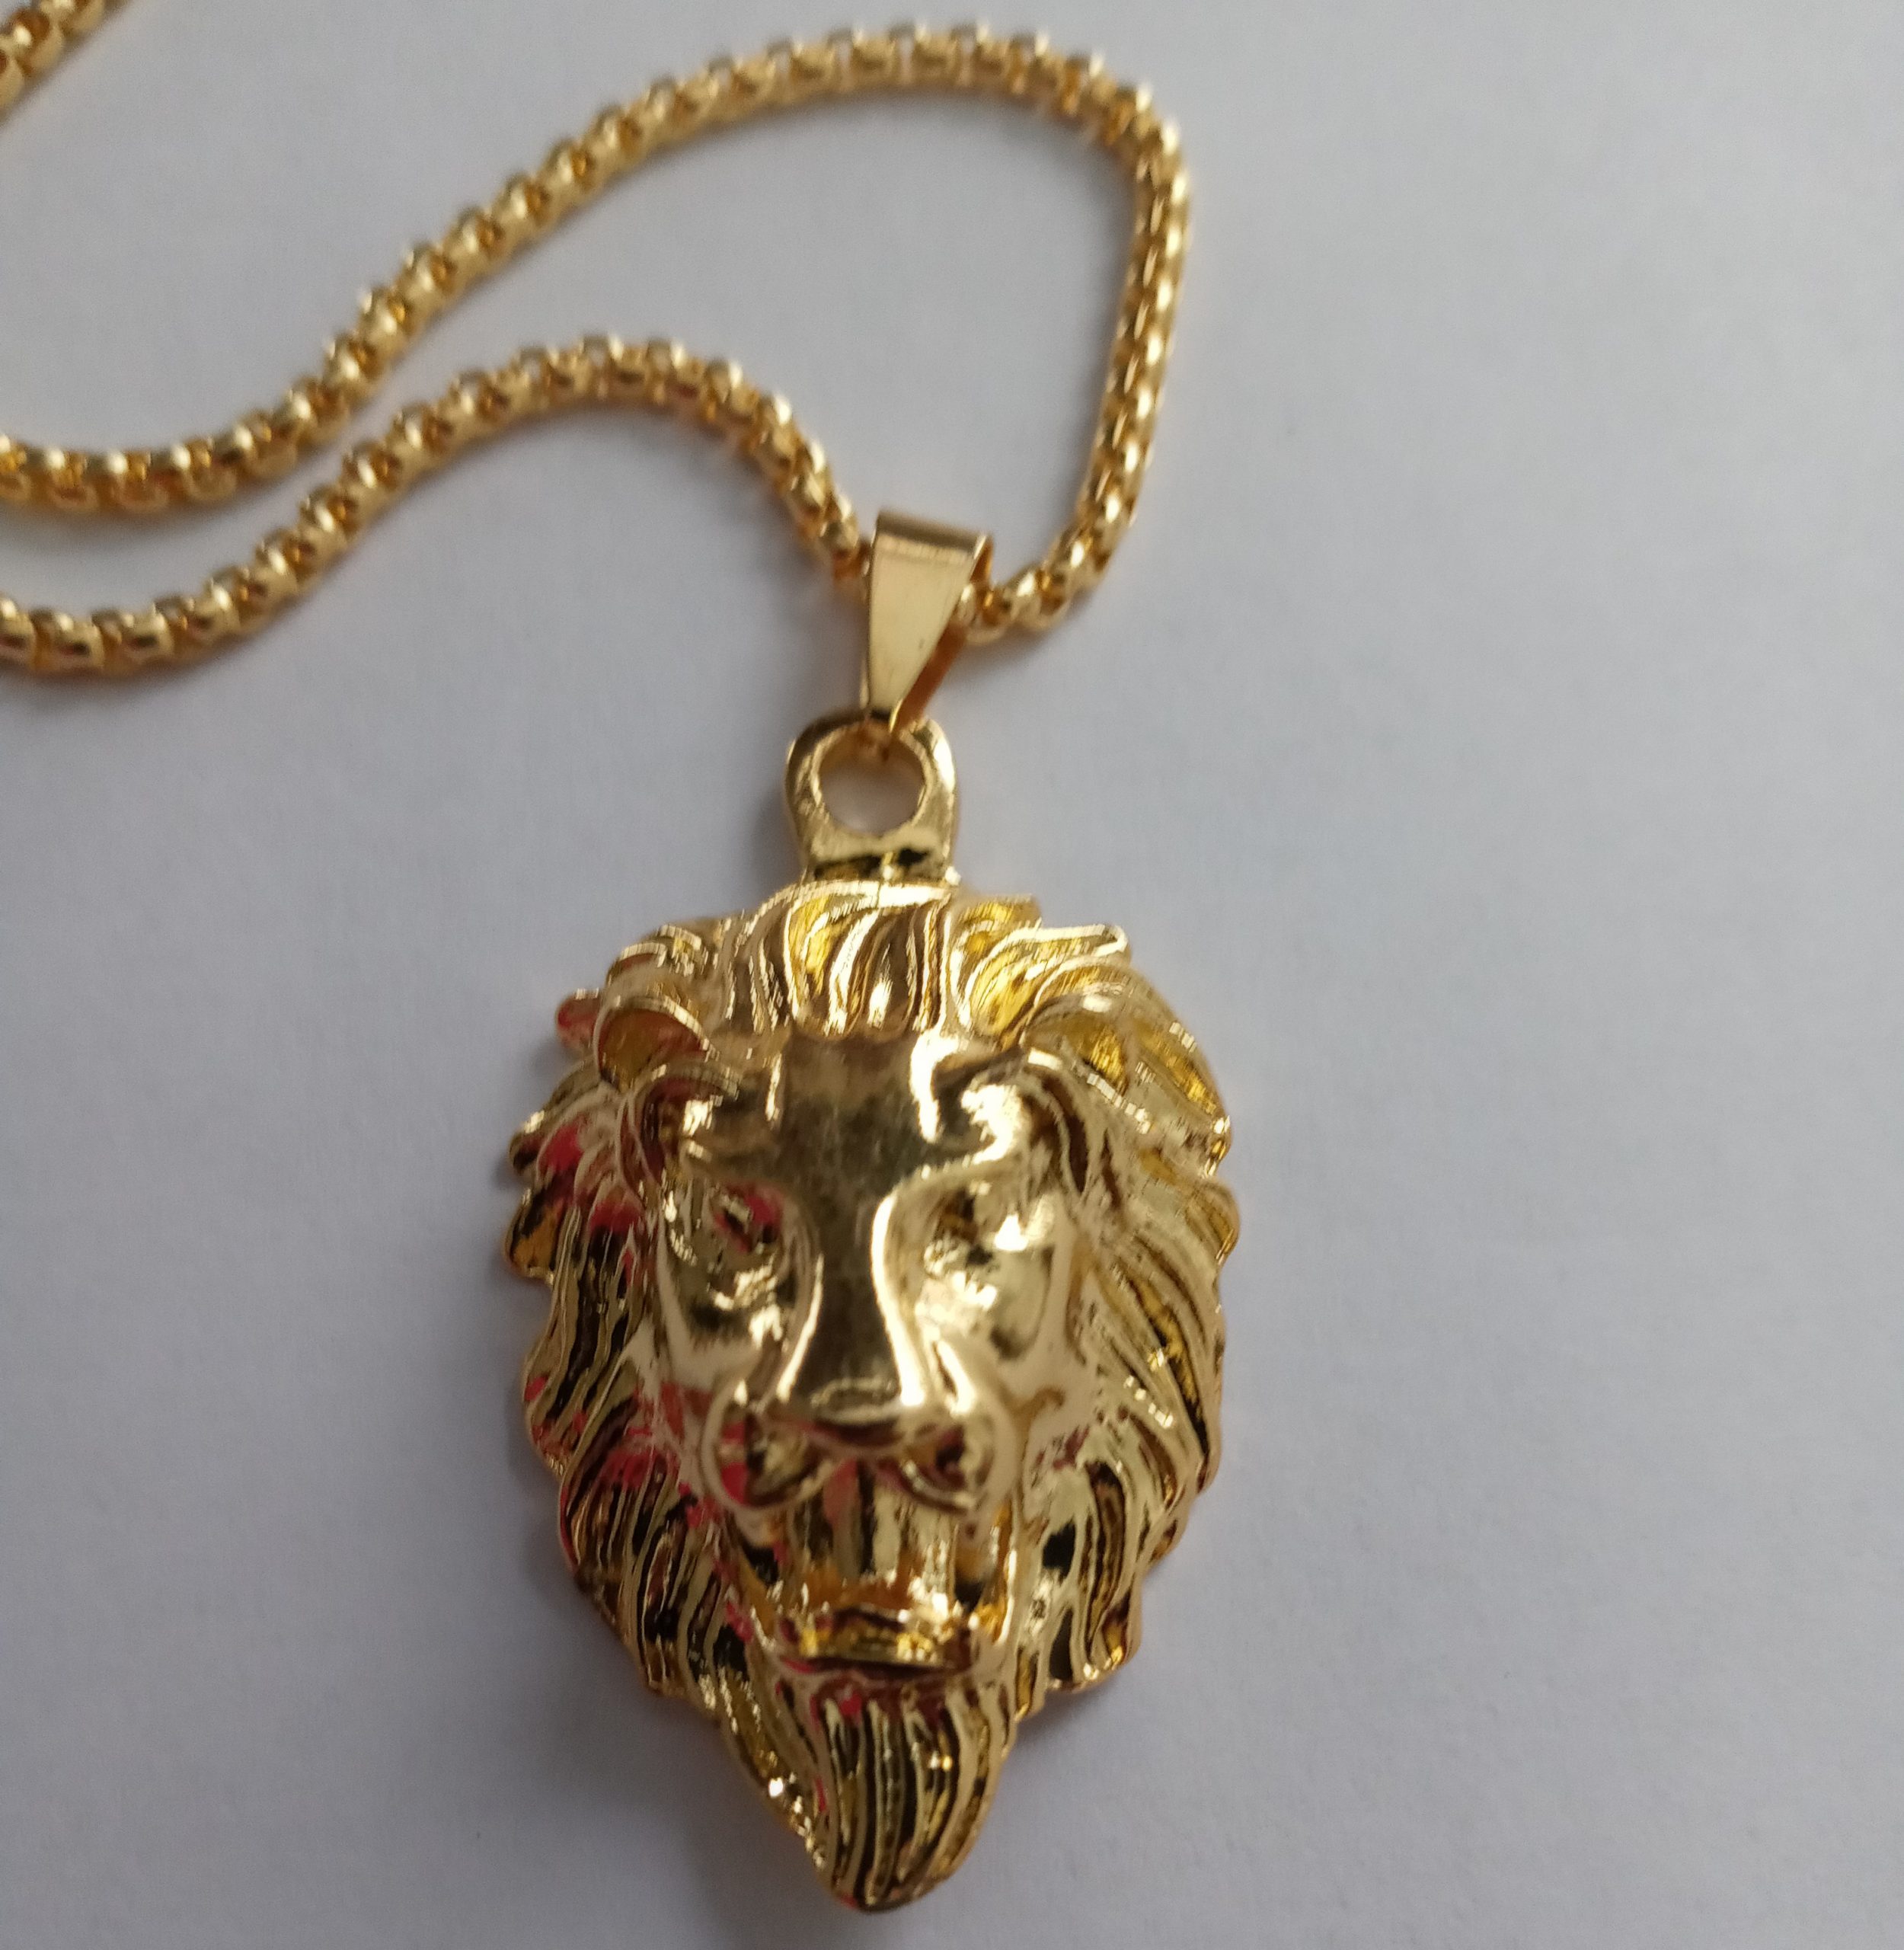 Gold Lion necklace